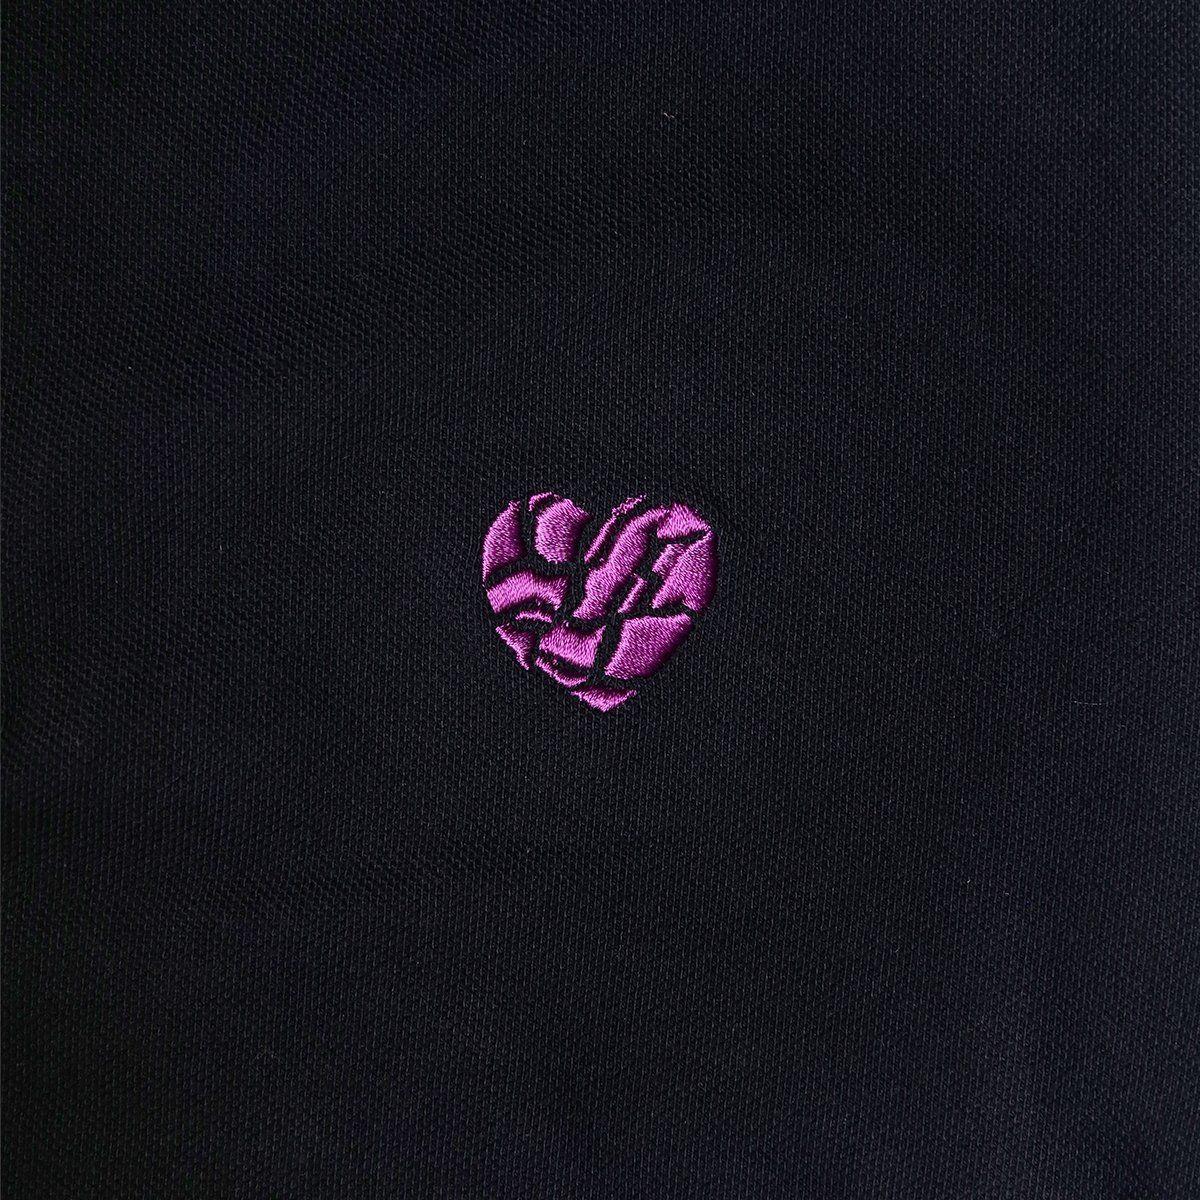 Heartbroken Logo - HEARTBROKEN LOGO POLO SHIRT